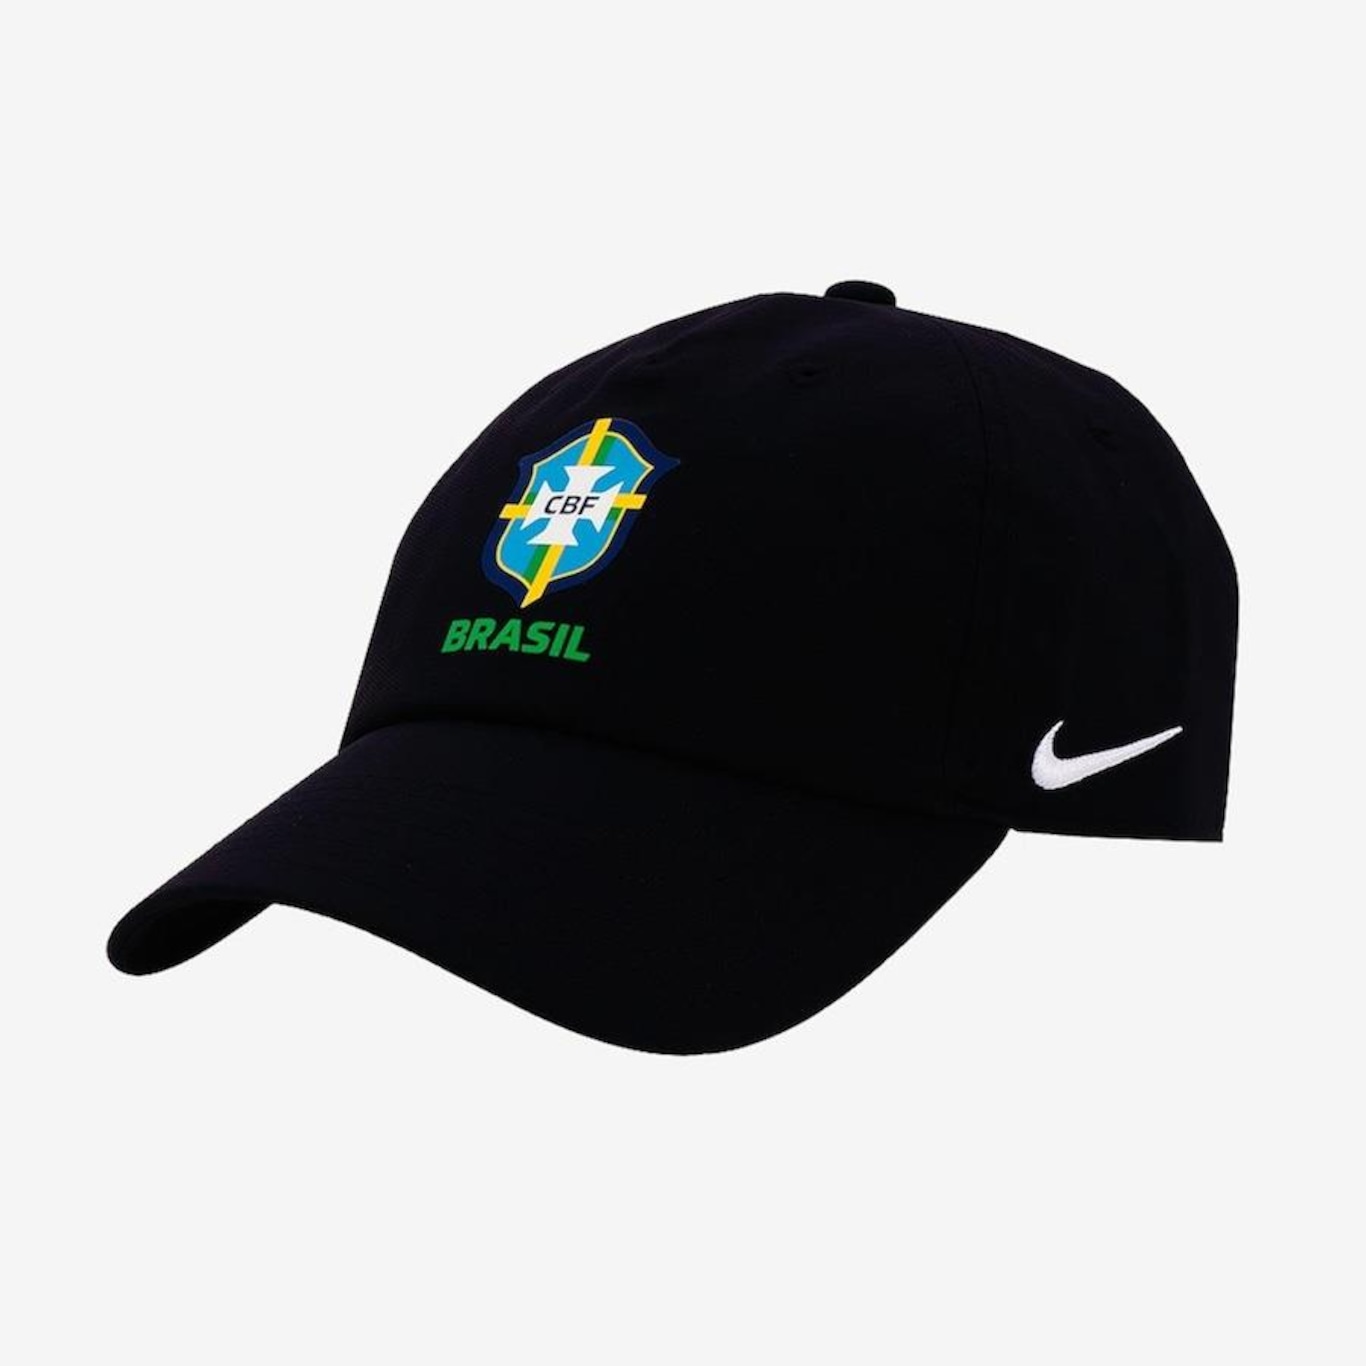 Boné do Brasil Nike Club - Strapback - Adulto - Foto 1